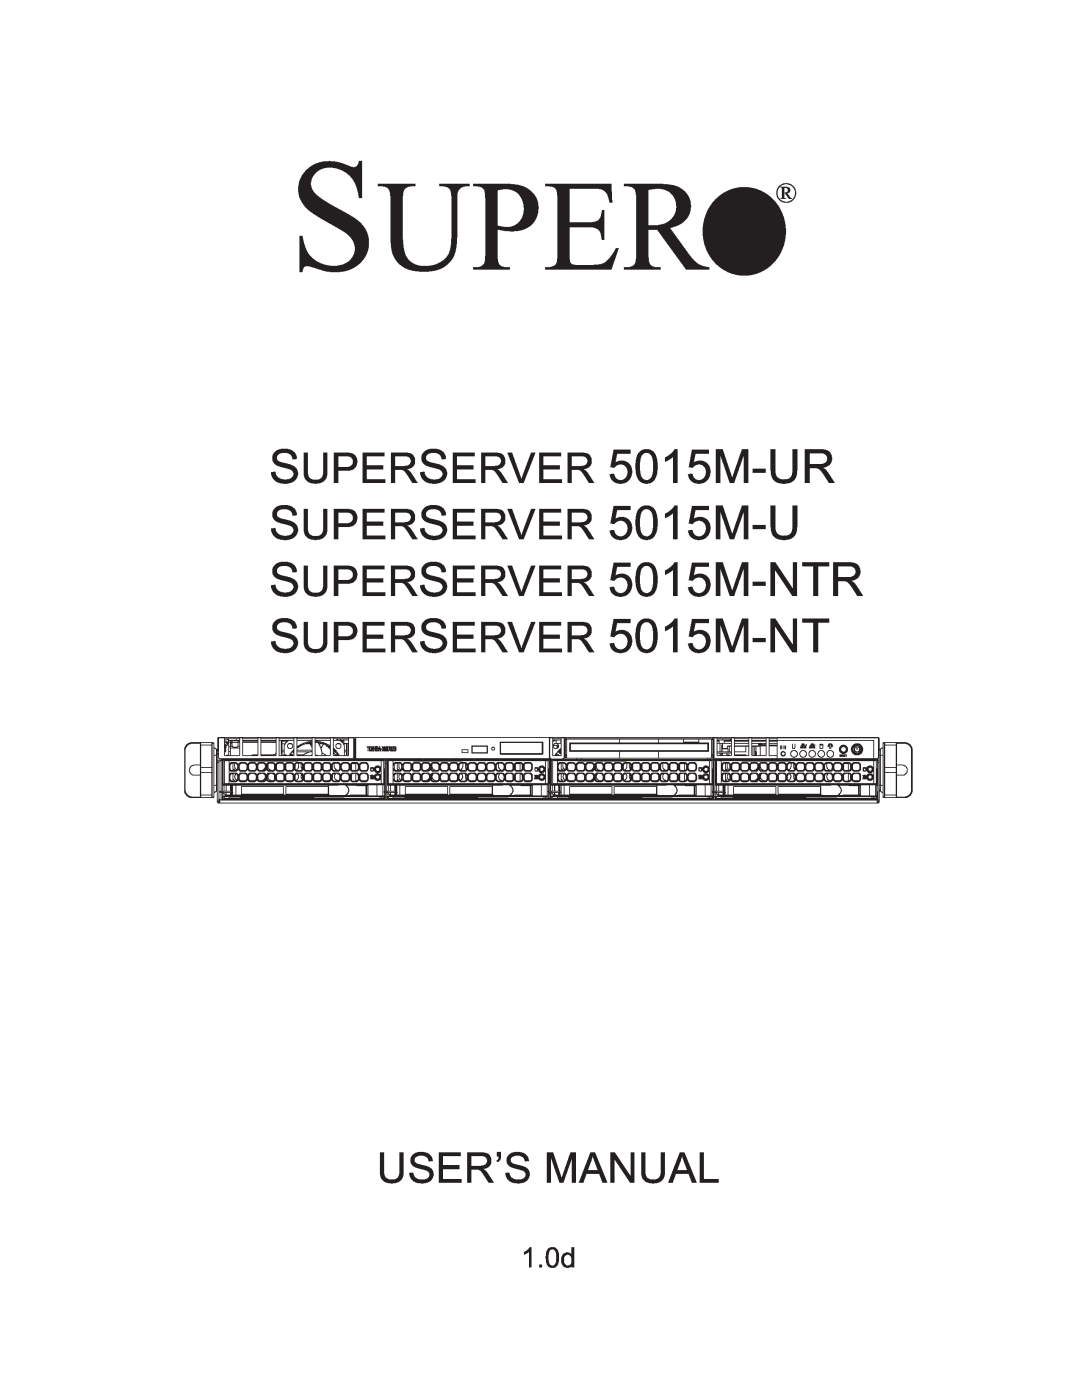 SUPER MICRO Computer user manual 1.0d, Super, SUPERSERVER 5015M-UR, SUPERSERVER 5015M-NTR SUPERSERVER 5015M-NT 